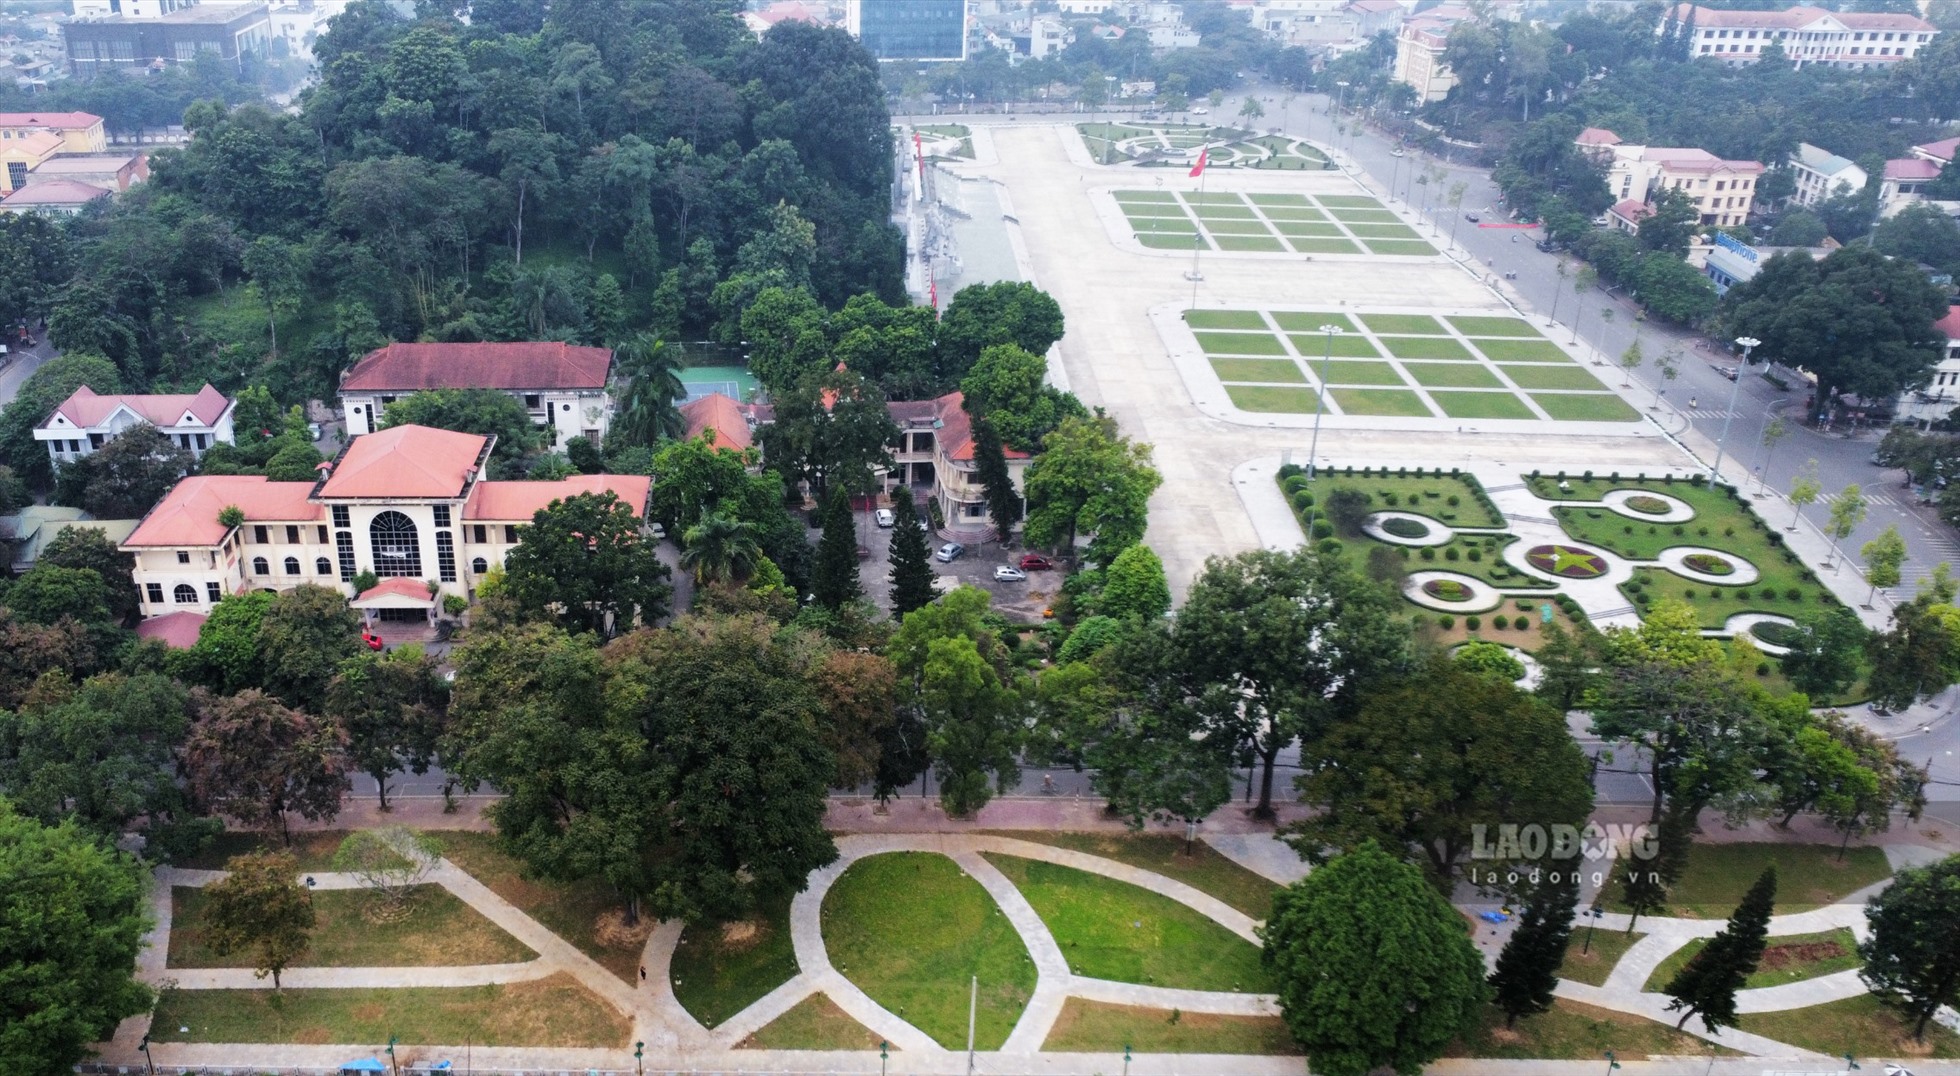 Tỉnh Tuyên Quang đang lập quy hoạch mở rộng không gian về phía trước Quảng trường hiện tại với diện tích khoảng 10ha.